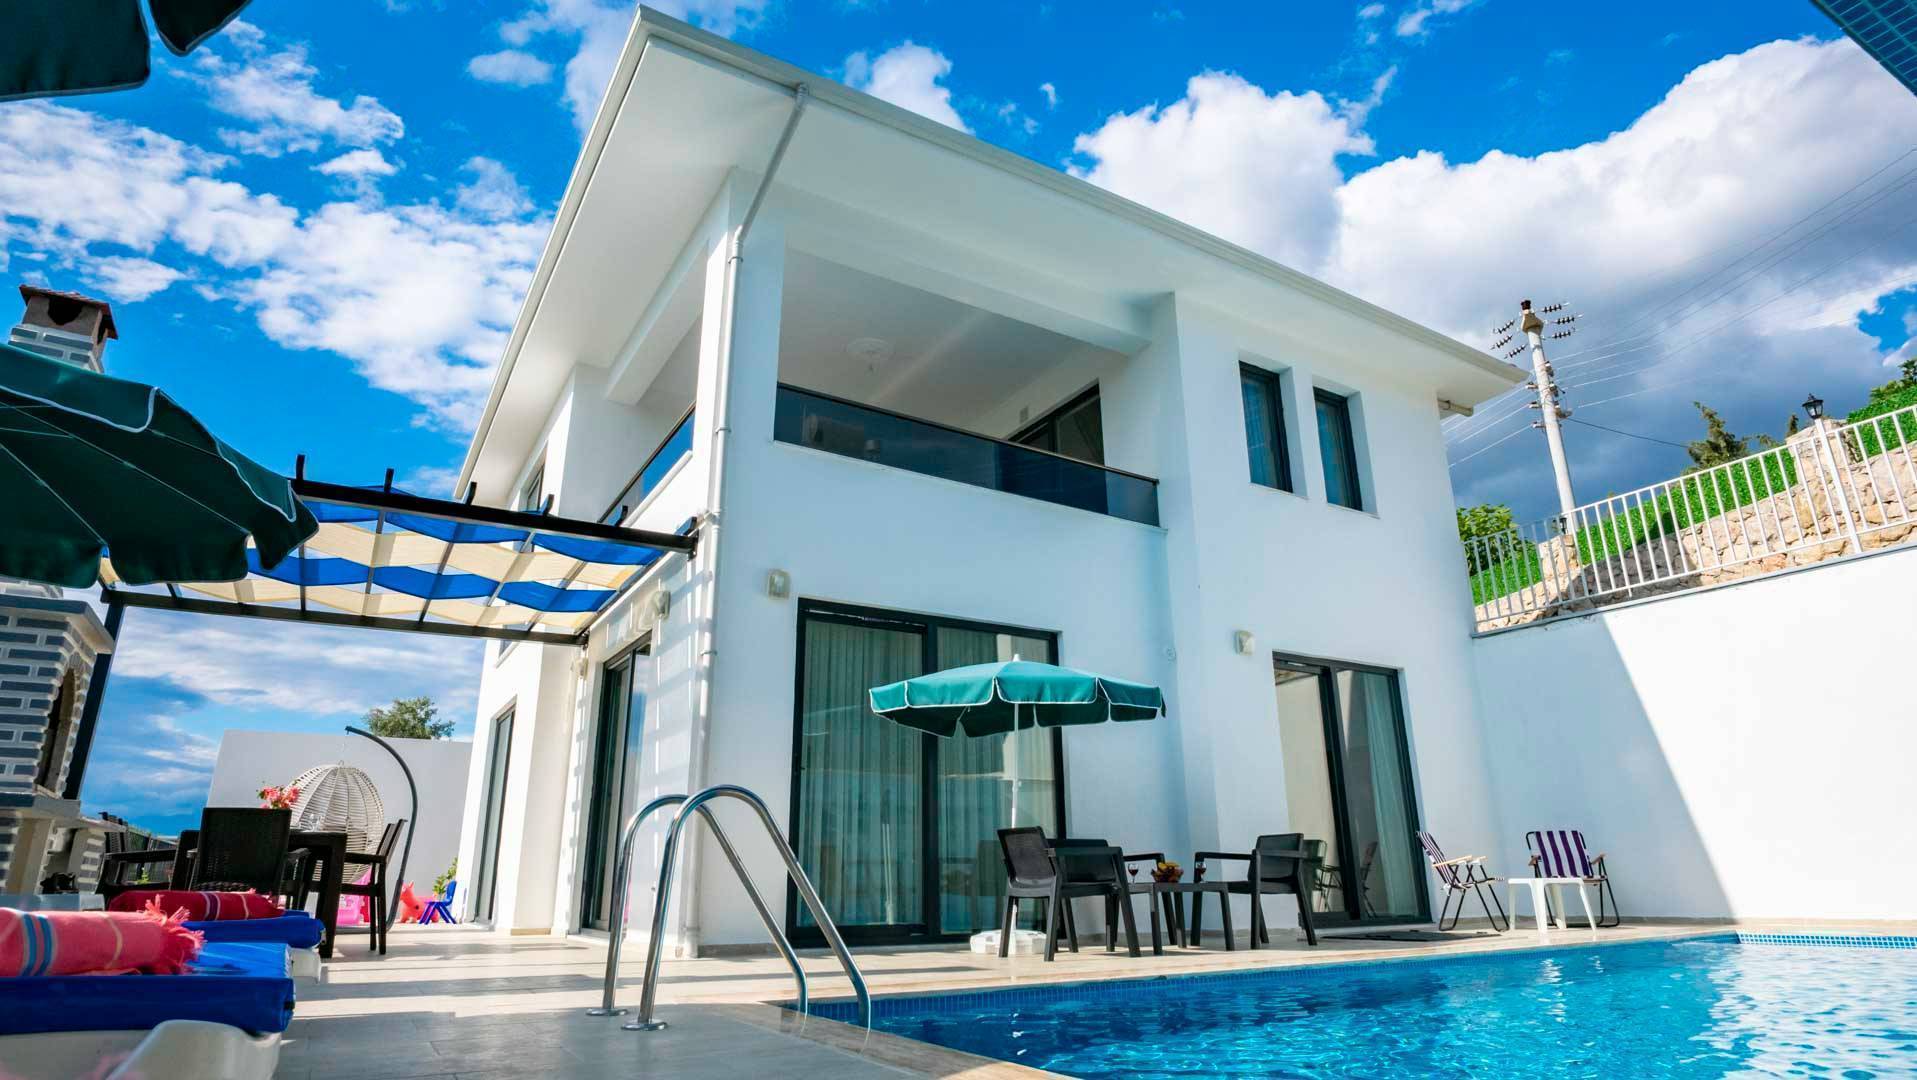  Fethiye'de Merkezi Konumda, Korunaklı Özel Havuzlu, Kiralık Modern Villa